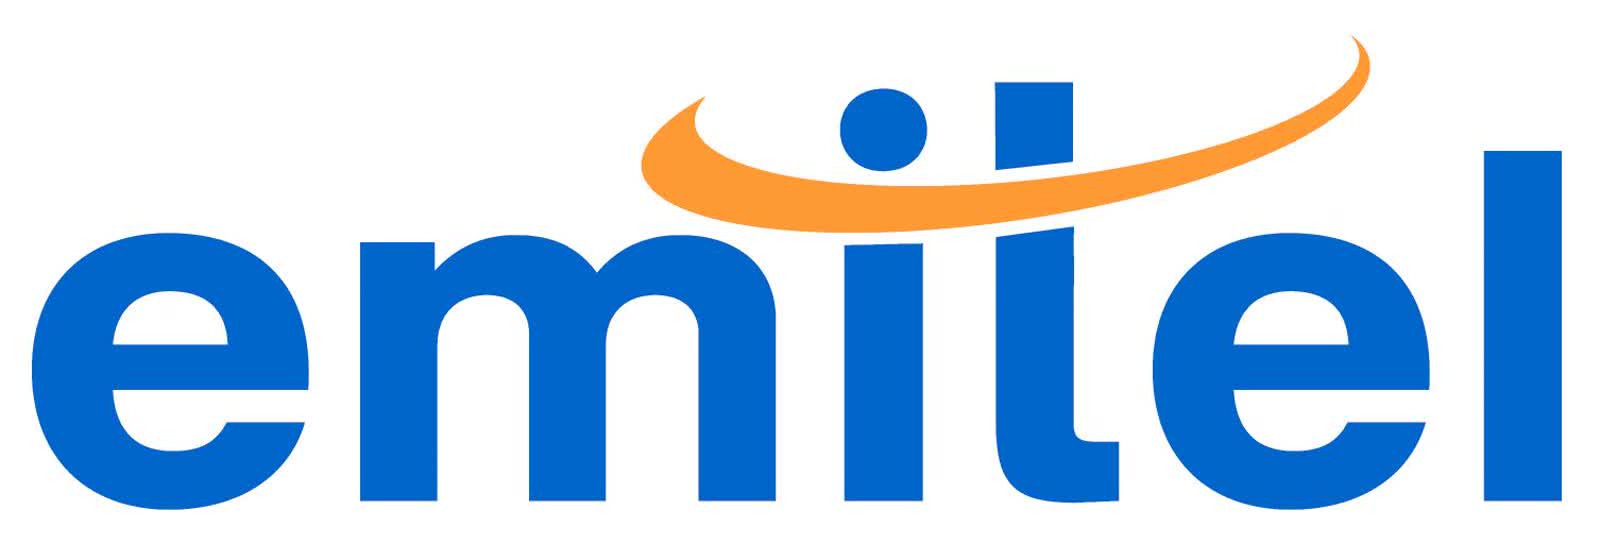 Emitel-logo.jpg